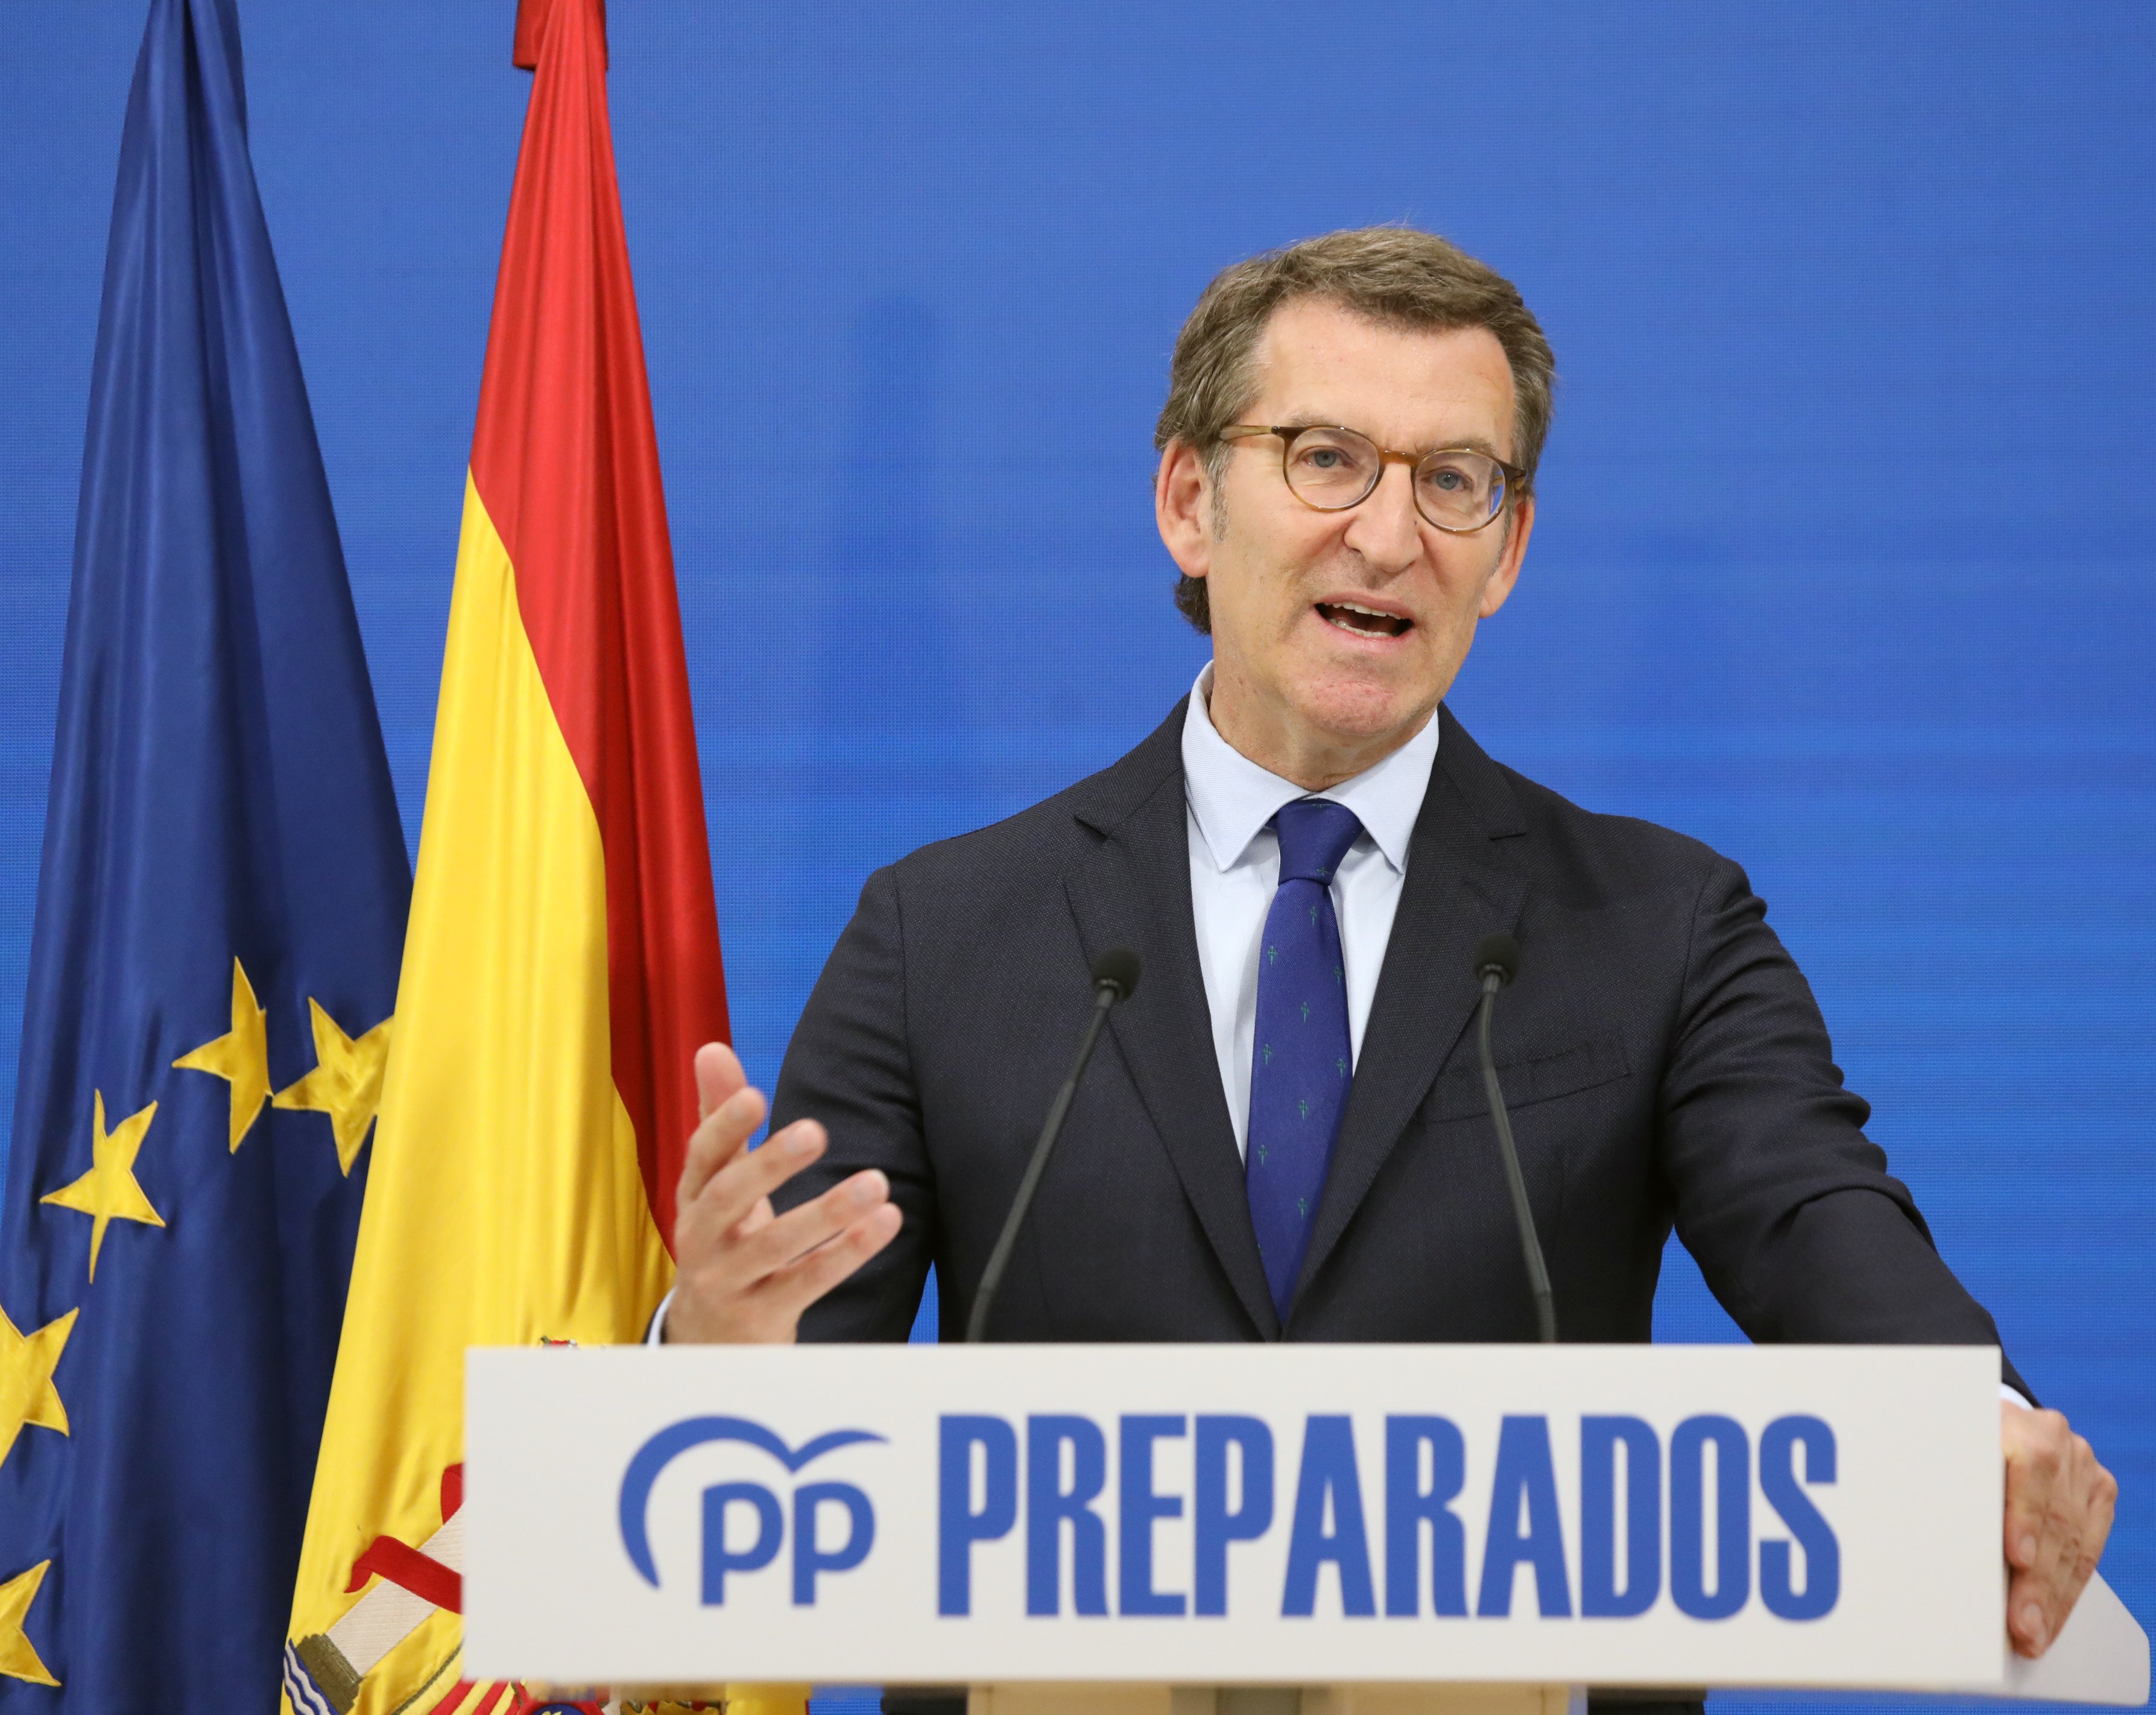 Feijóo acusa Sánchez: "En aquests moments l'independentisme mana a Espanya"